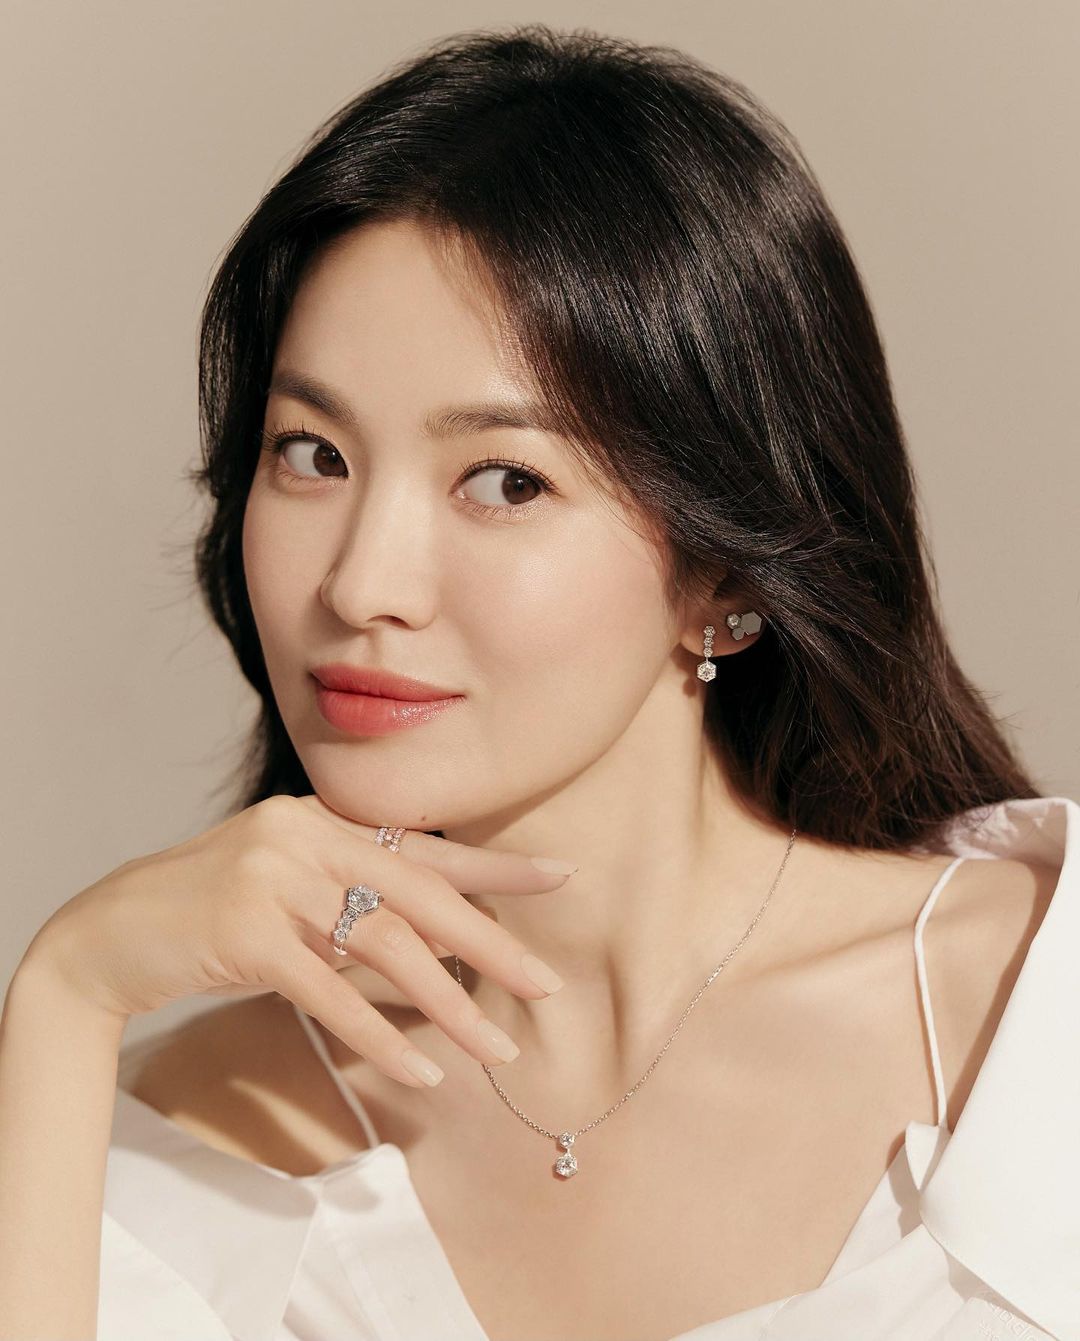 Vẻ đẹp tuổi 18 như tranh vẽ của Song Hye Kyo hiện đang “gây sốt” - 2